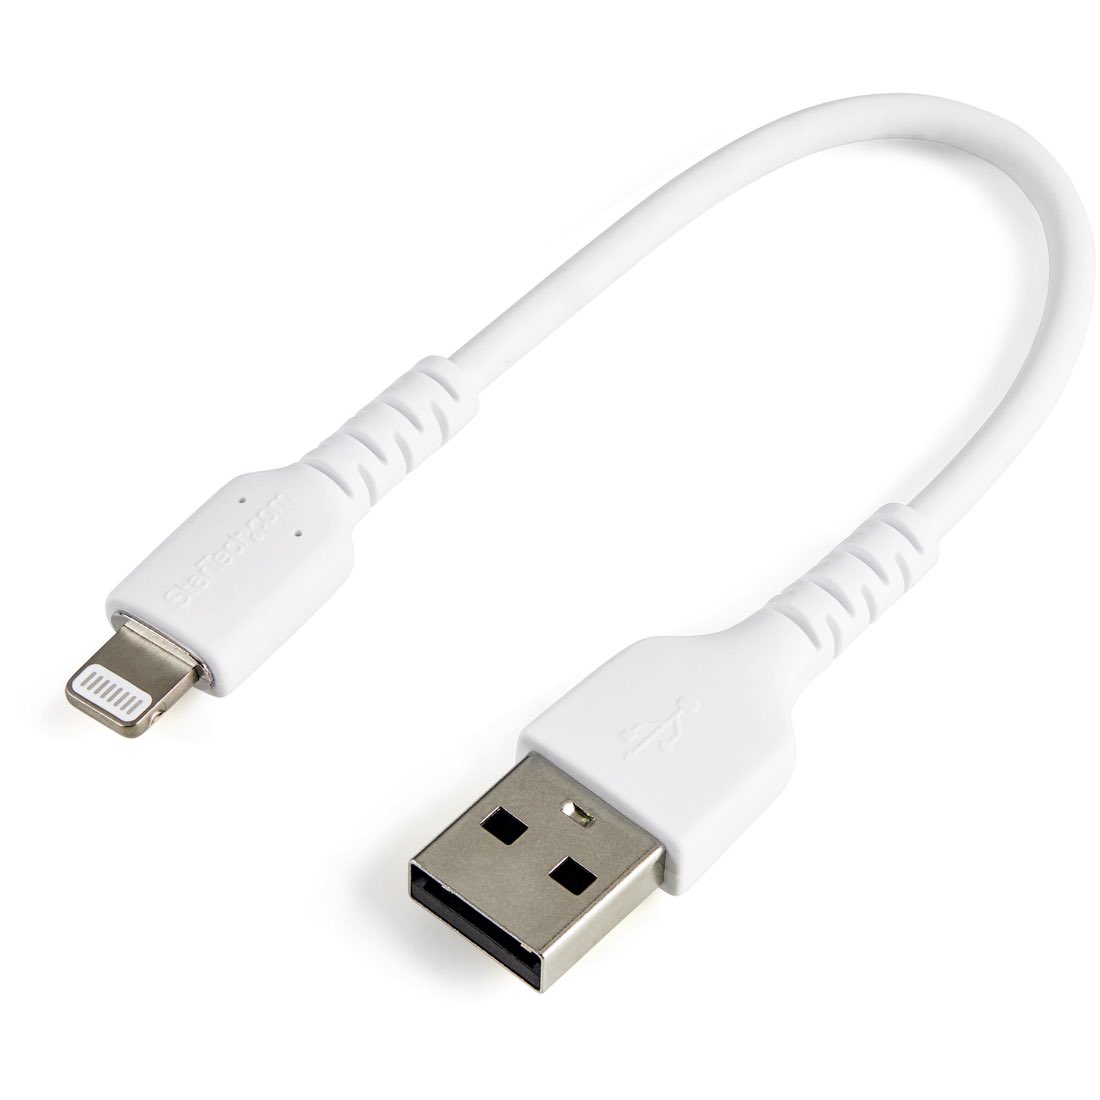 StarTech.com Cable Resistente USB-A a Lightning de 15 cm Blanco - Cable de Sincronización y Carga USB Tipo A a Lightning con Fibra de Aramida